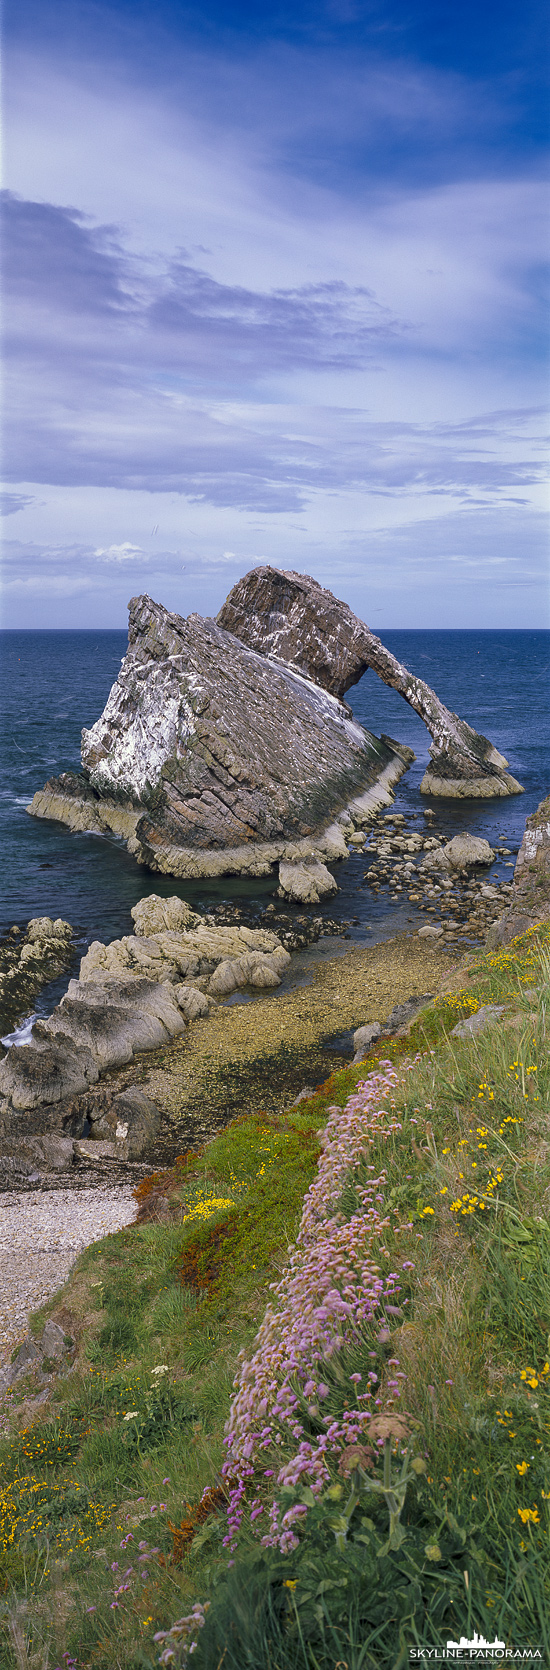 Panorama Schottland - Der Bow Fiddle Rock ich eine der bekanntesten Gesteinsformationen an der schottischen Küste. Hierbei handelt es sich um einen natürlichen Felsenbogen, den man in Nähe der Ortschaft Portknockie findet.